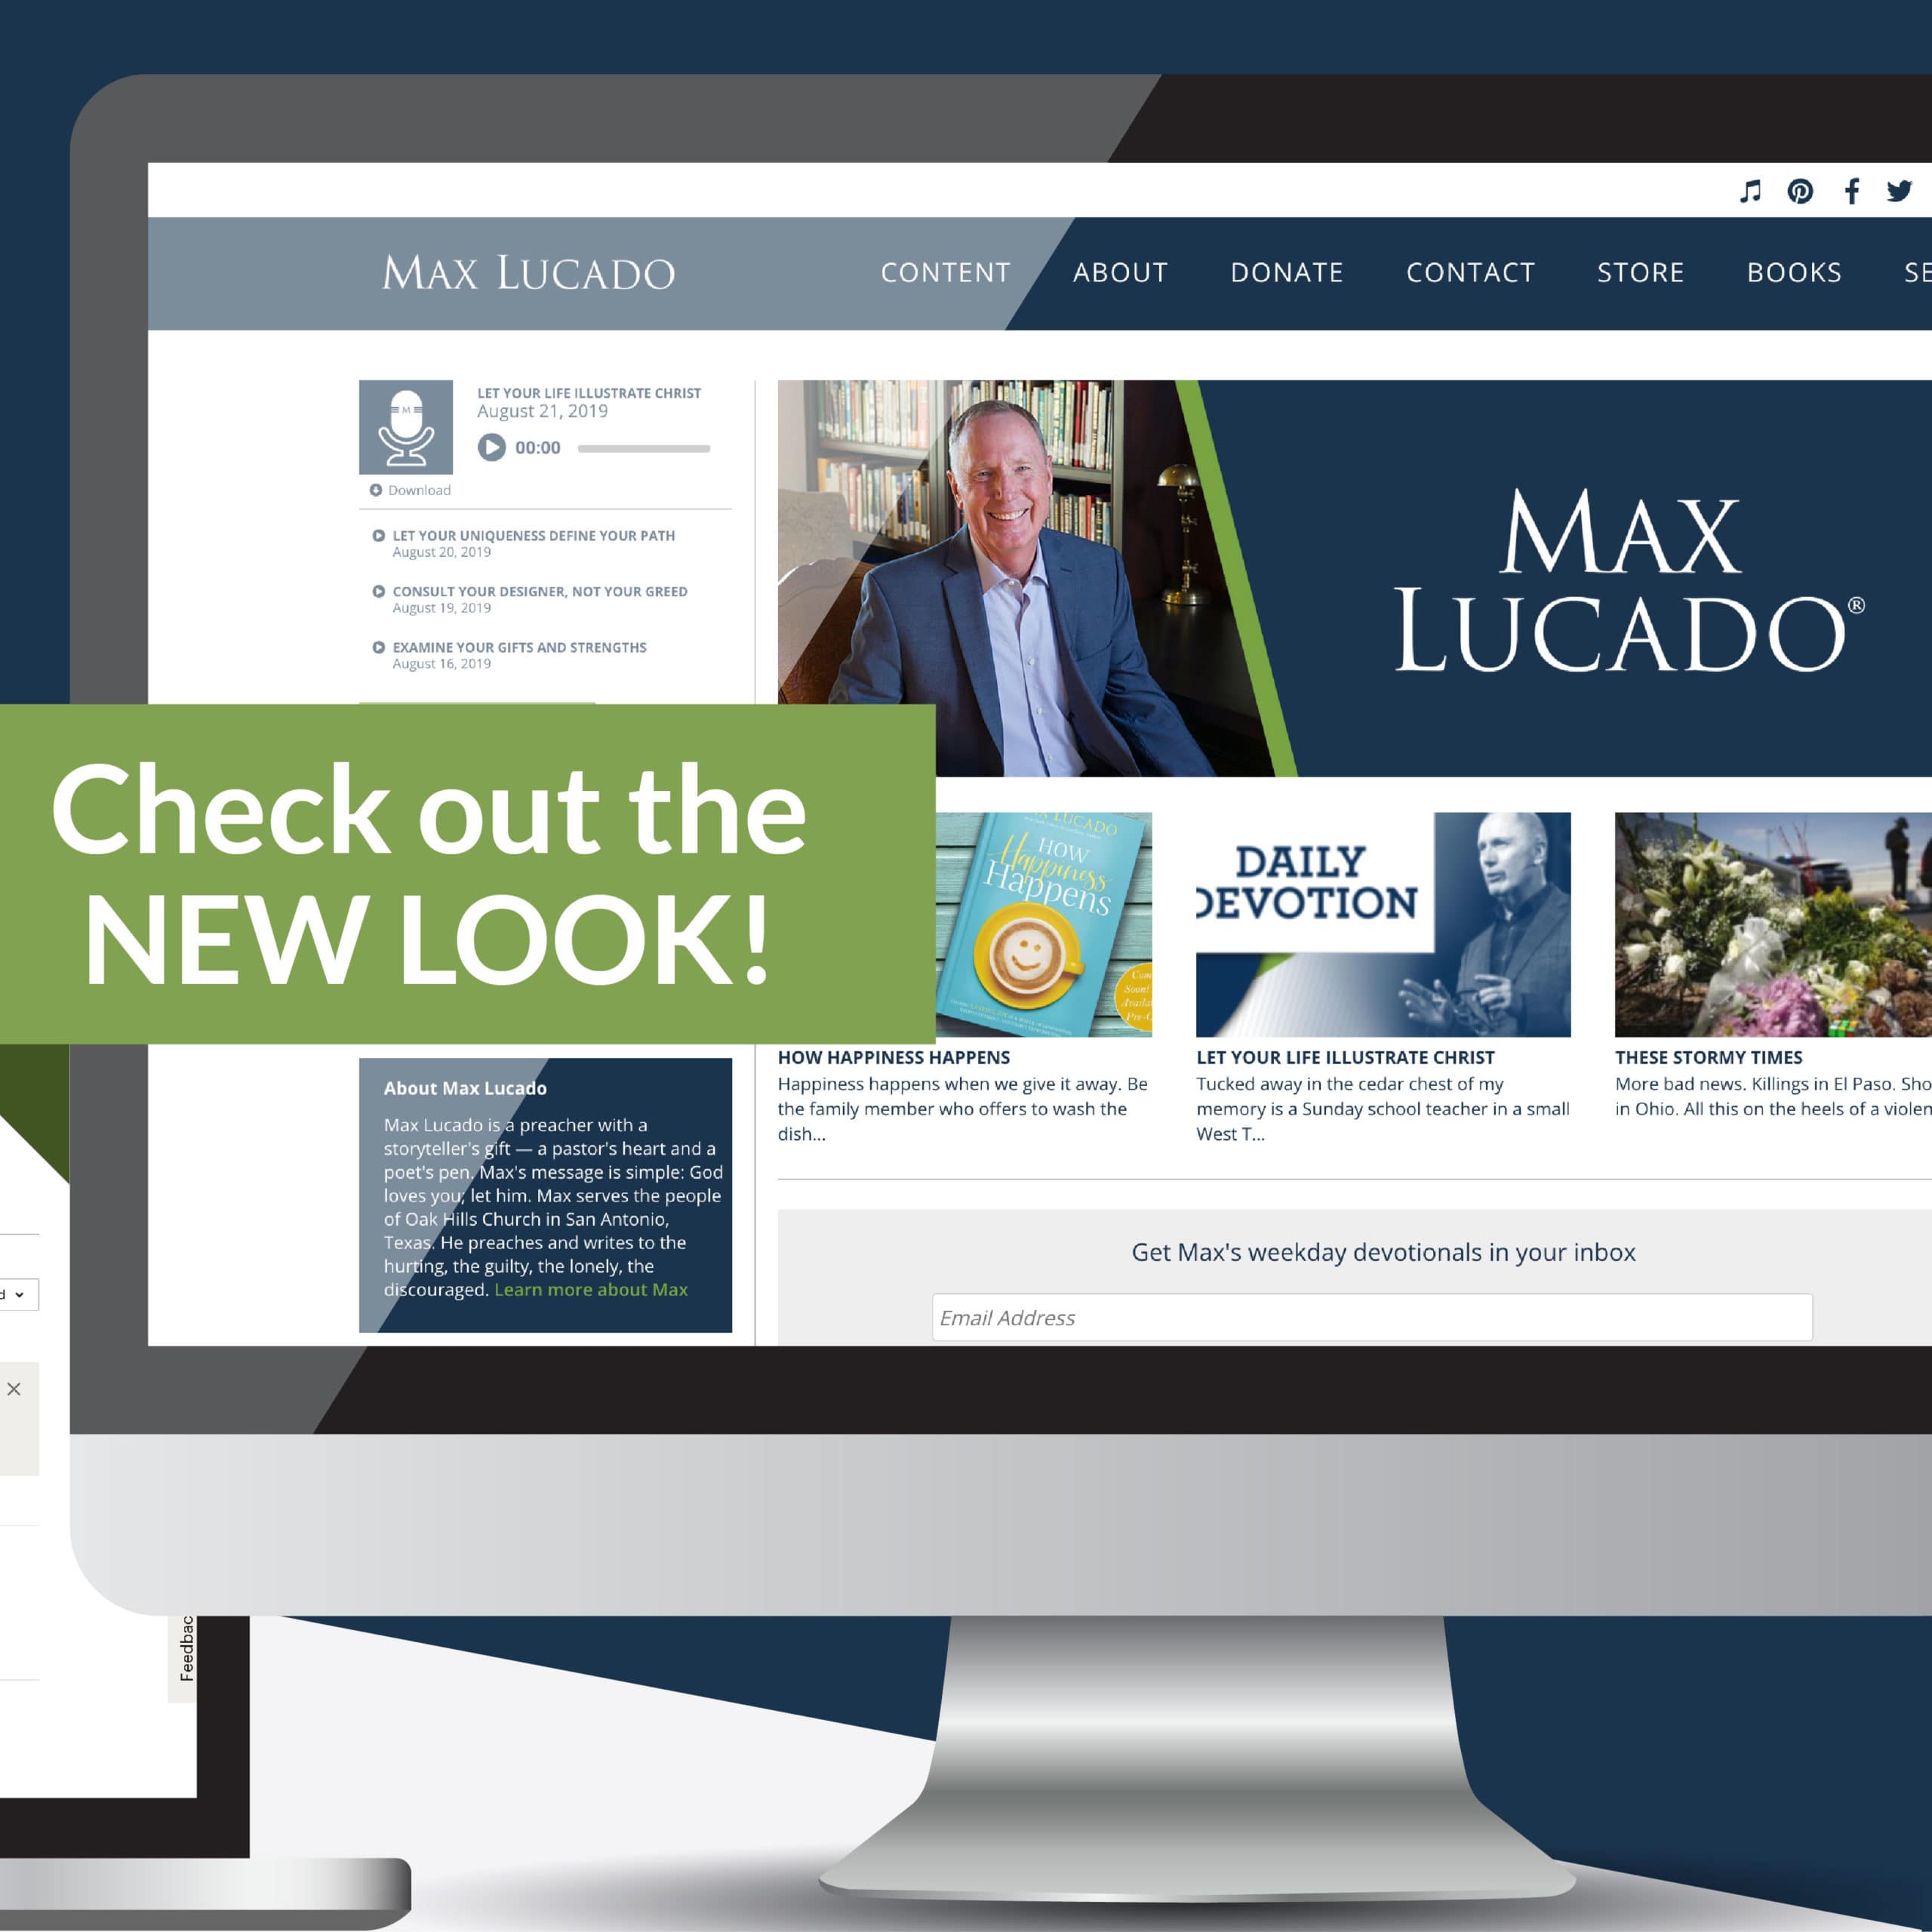 Max Lucado Email + website: spotlight image 3